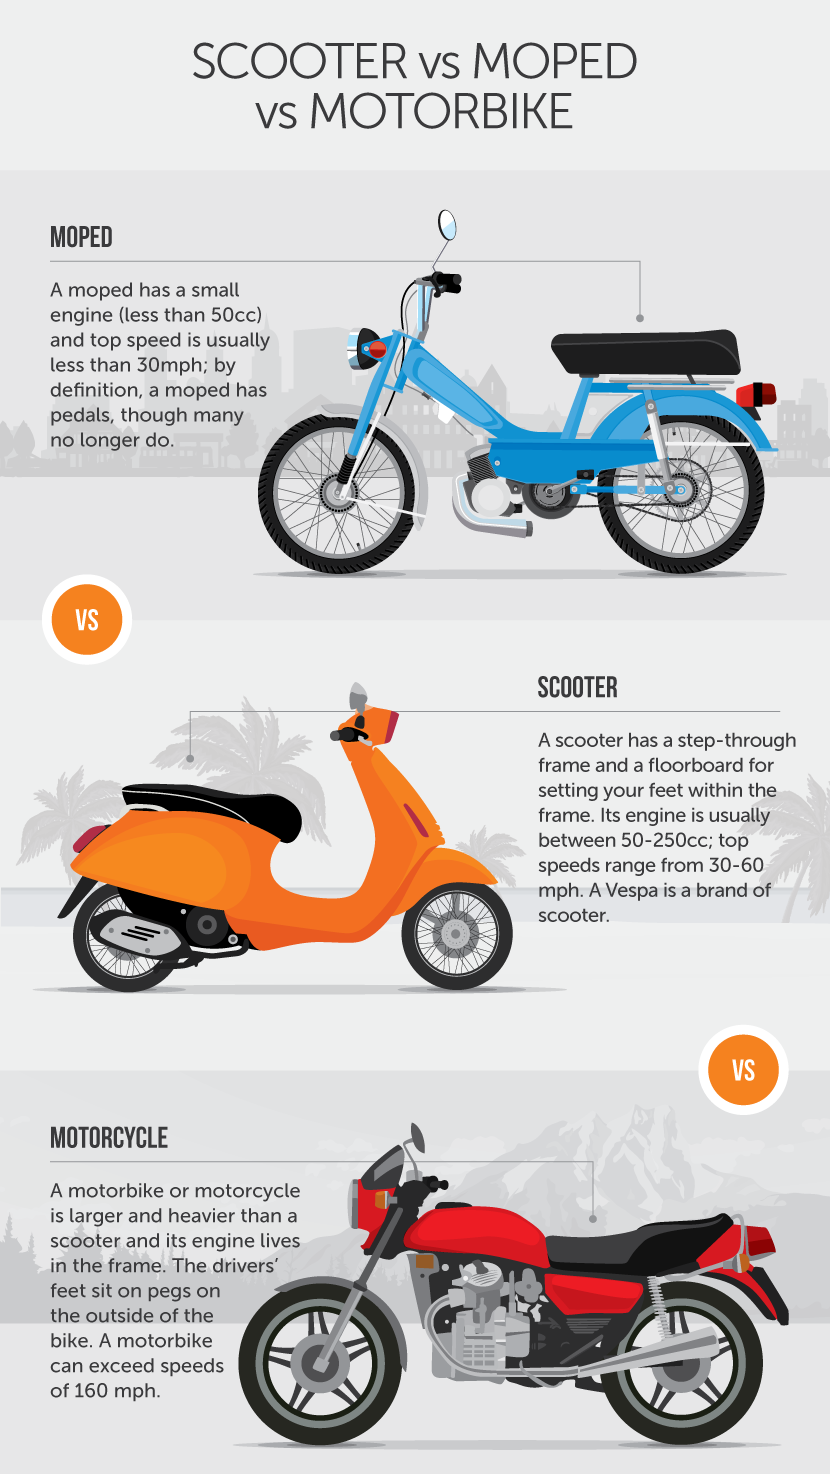 safest moped